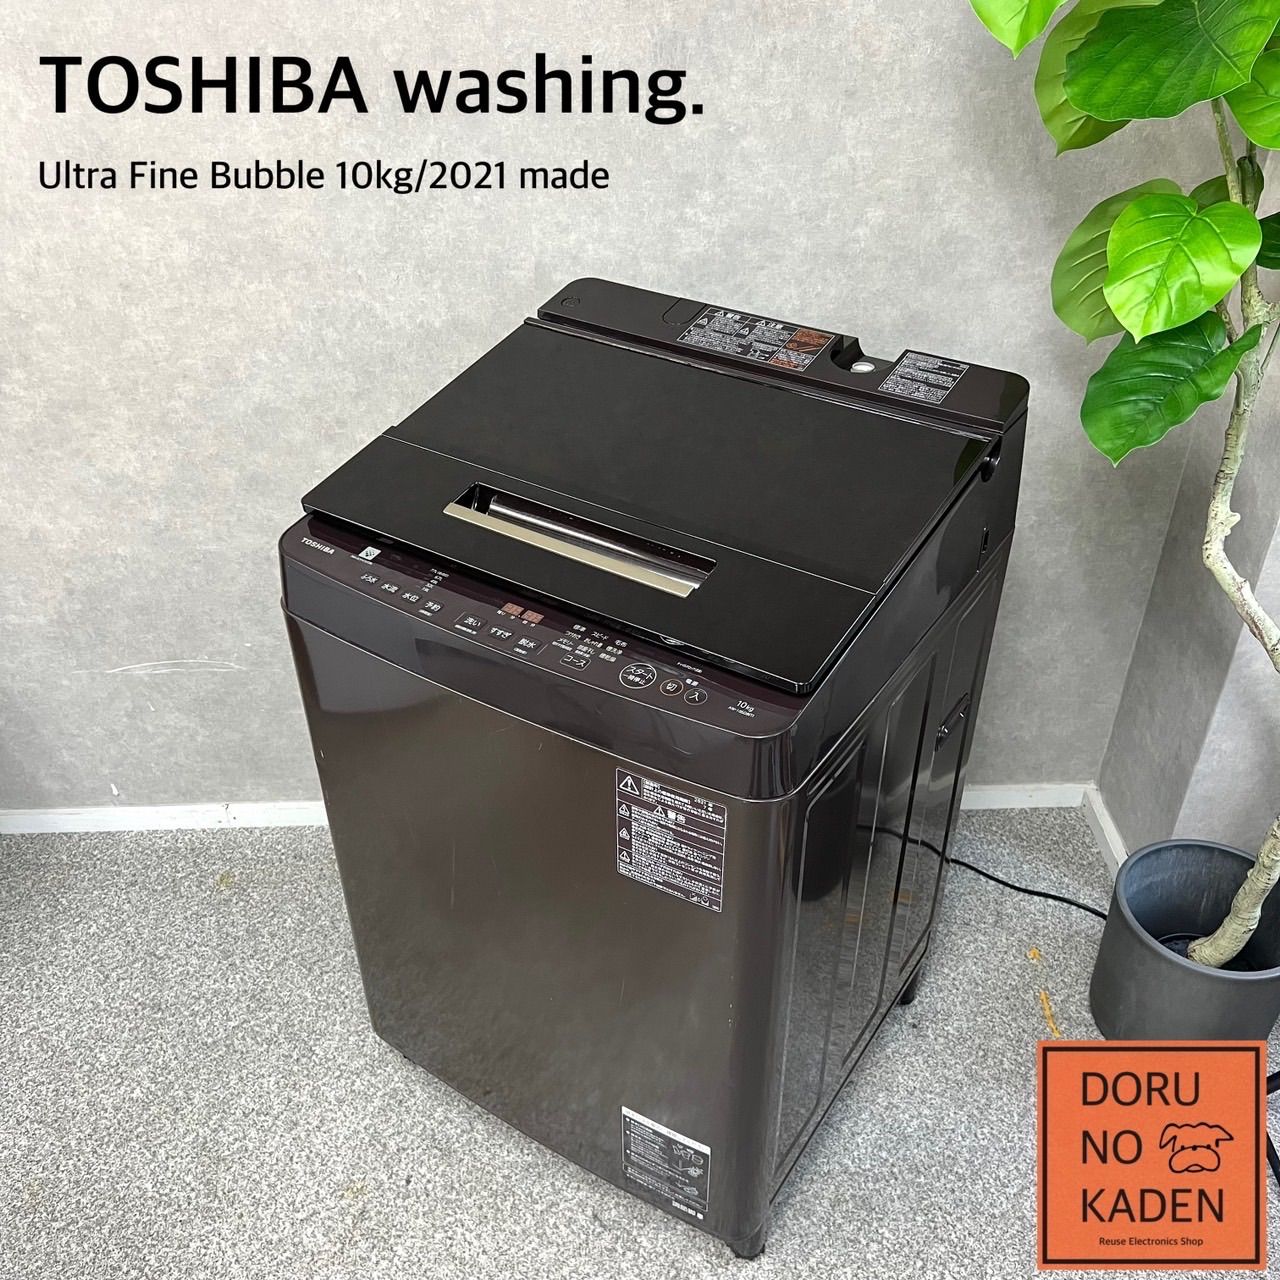 東芝全自動電気洗濯機AW-10SD8(T)ザブーン10kgTOSHIBA